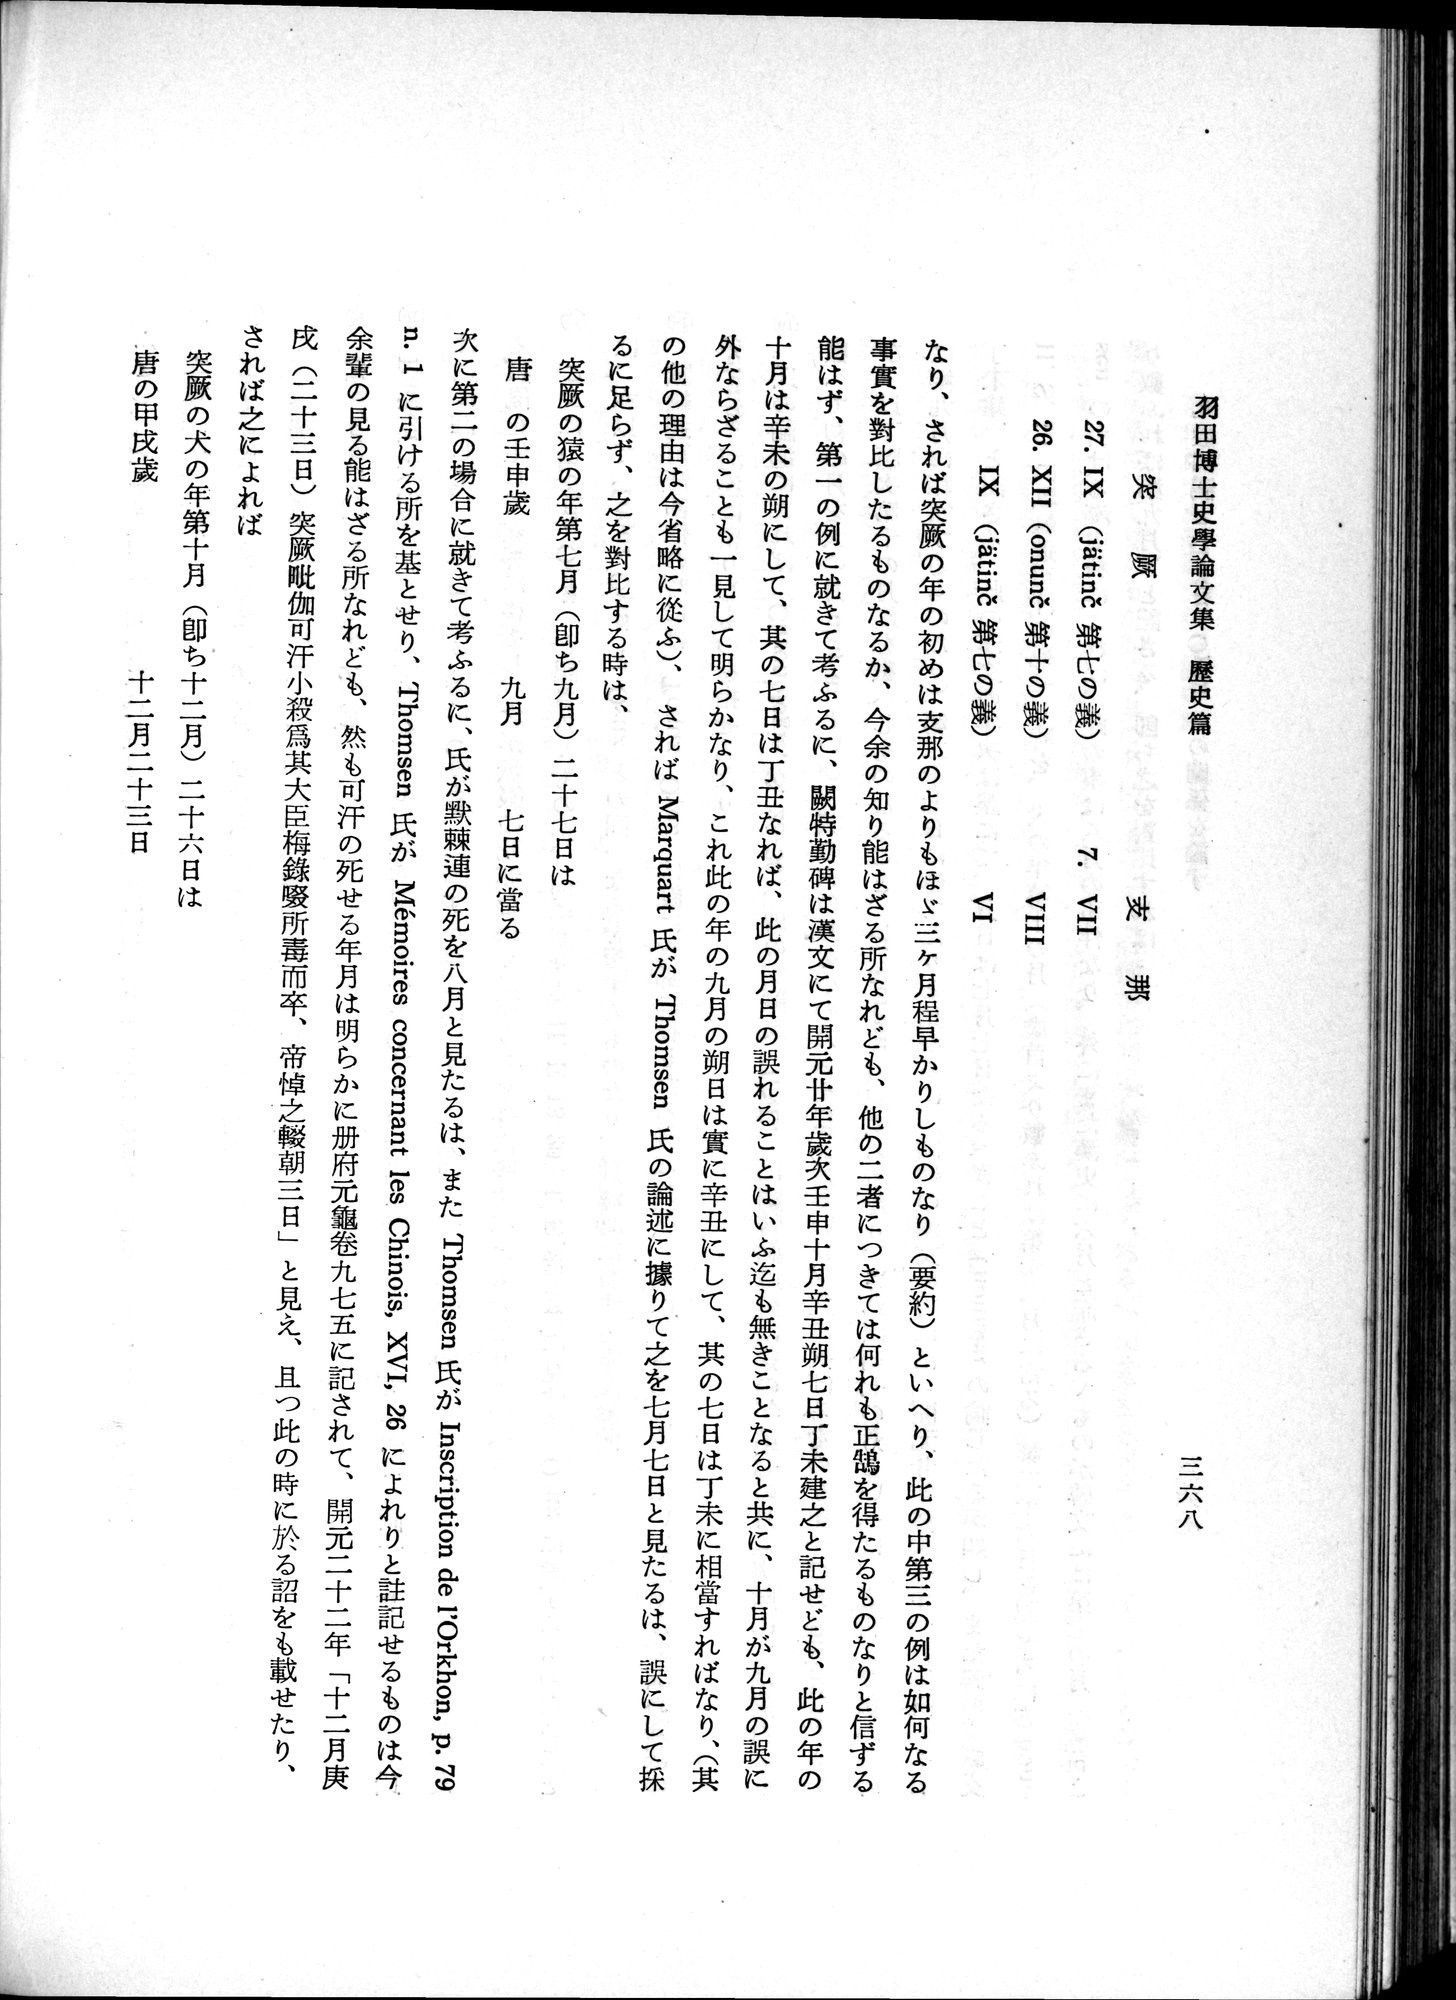 羽田博士史学論文集 : vol.1 / Page 406 (Grayscale High Resolution Image)